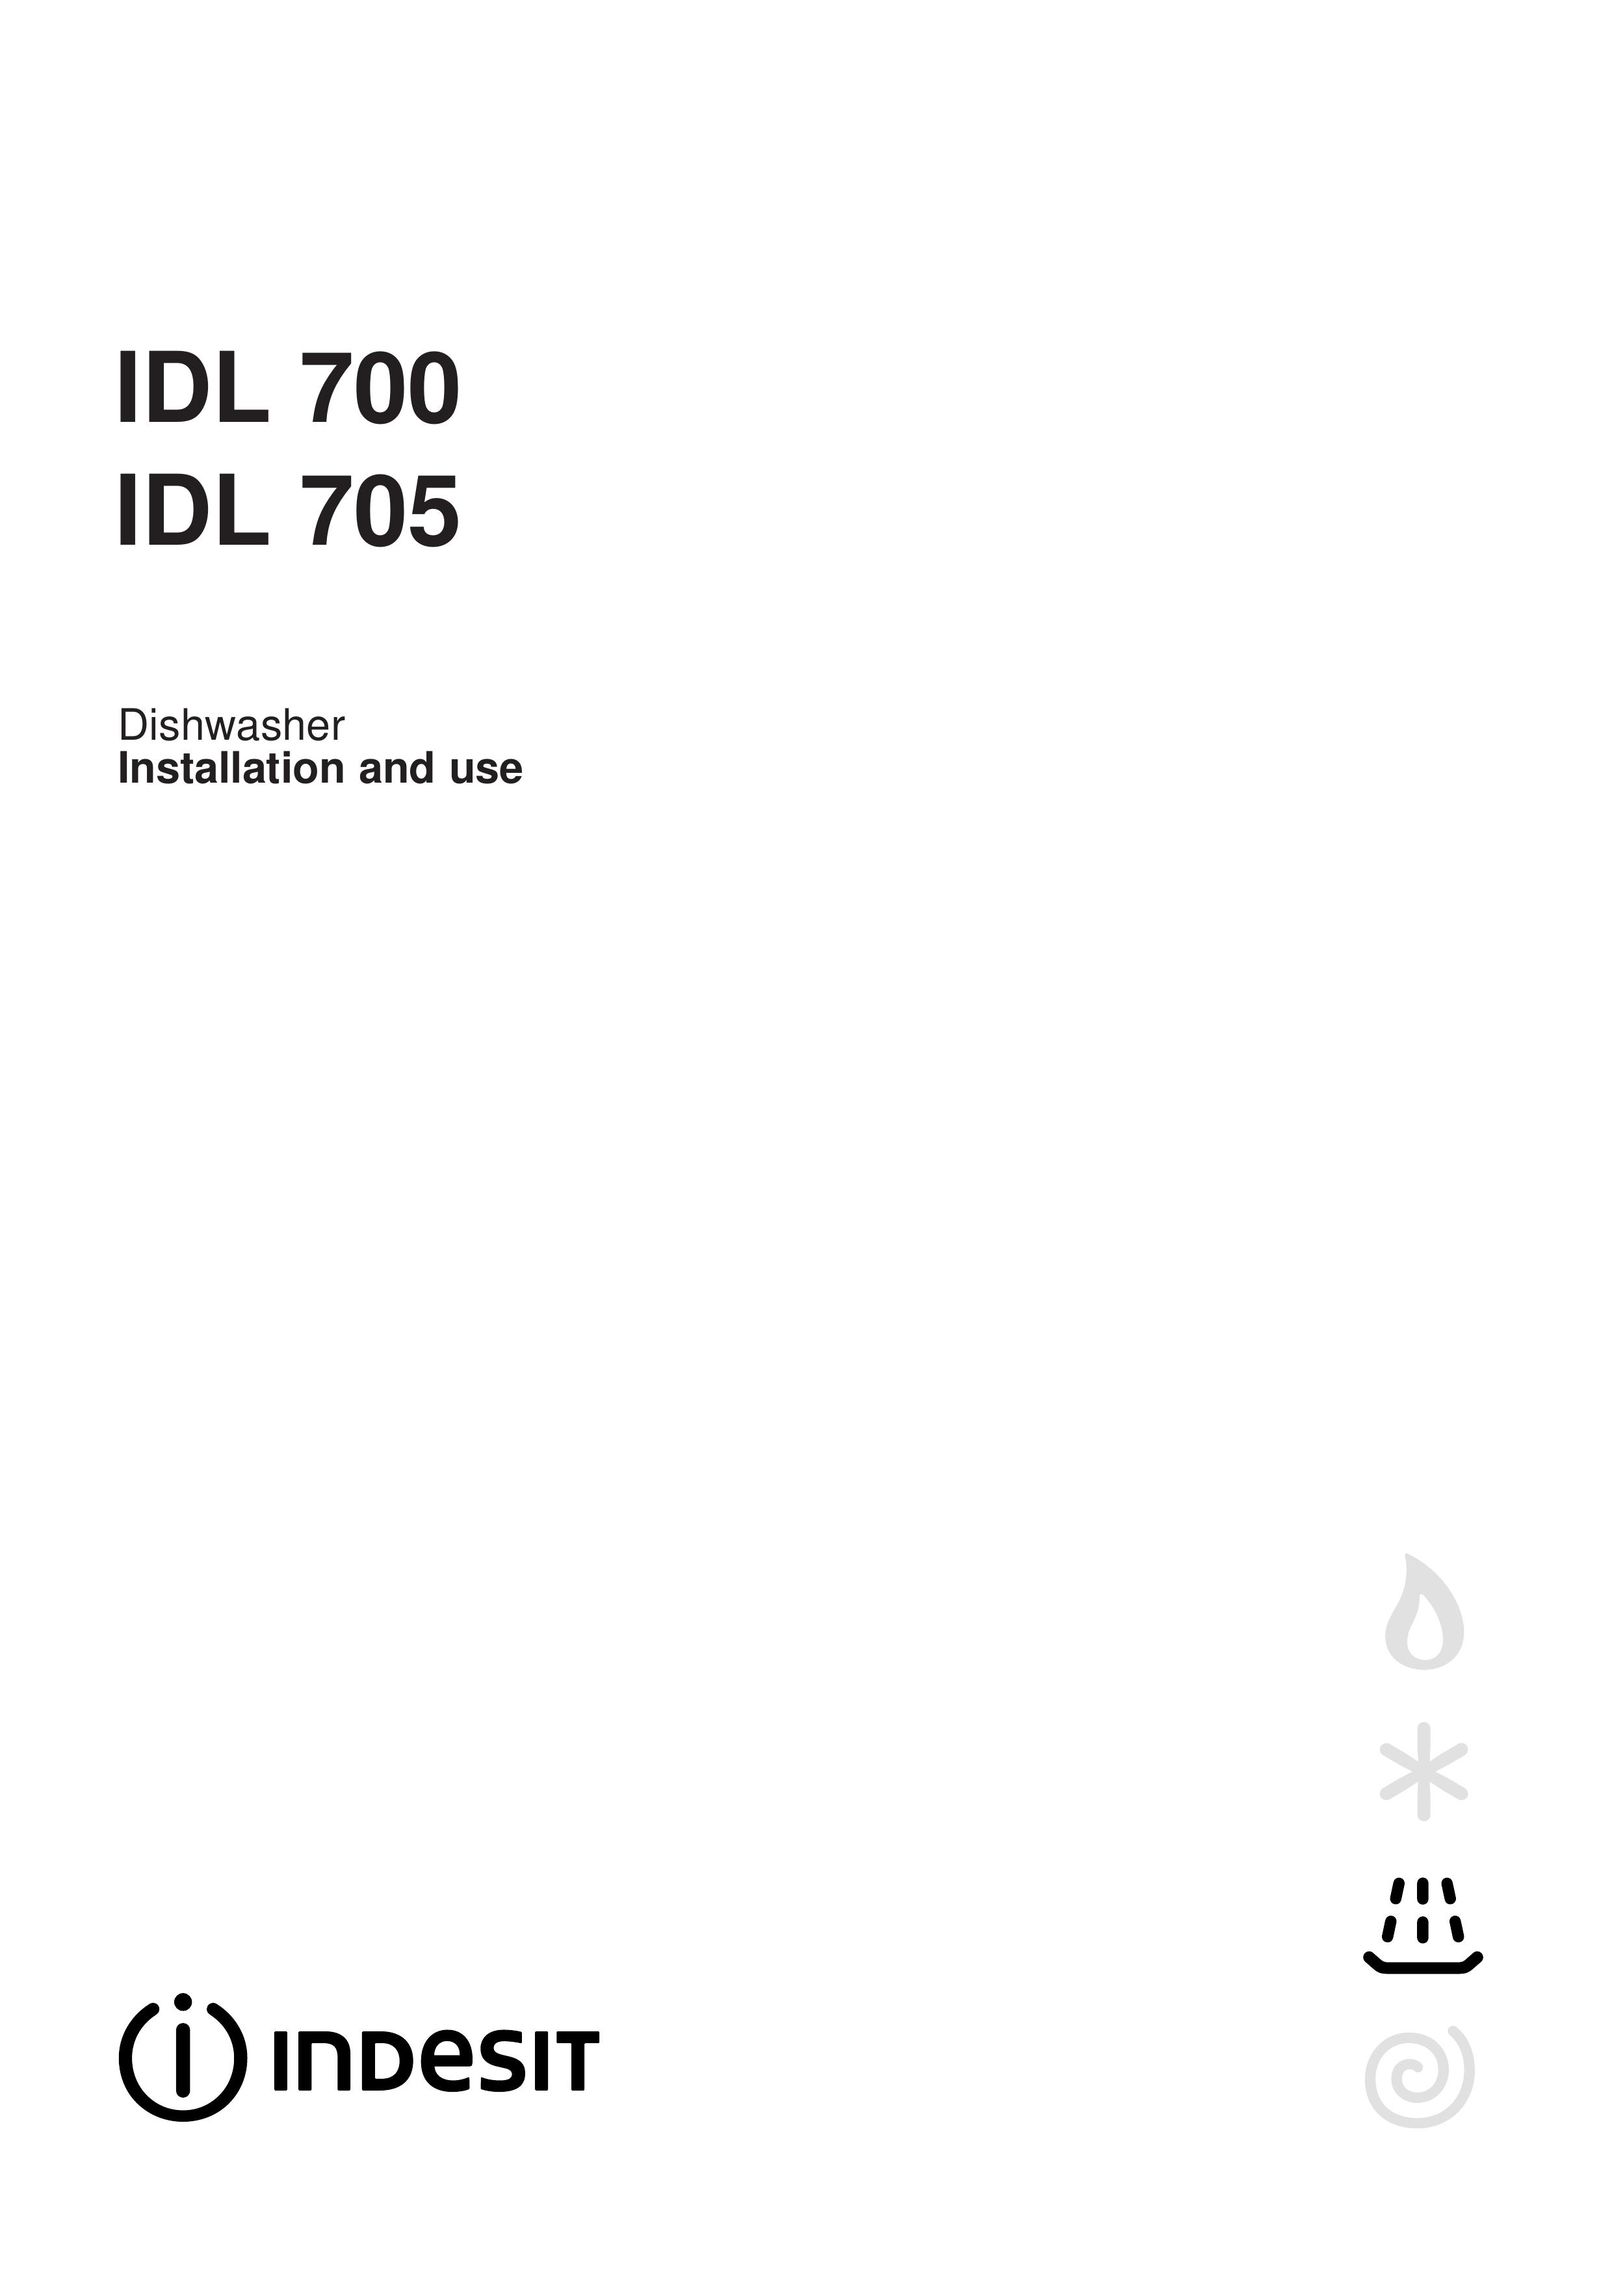 Indesit IDL 705 Dishwasher User Manual